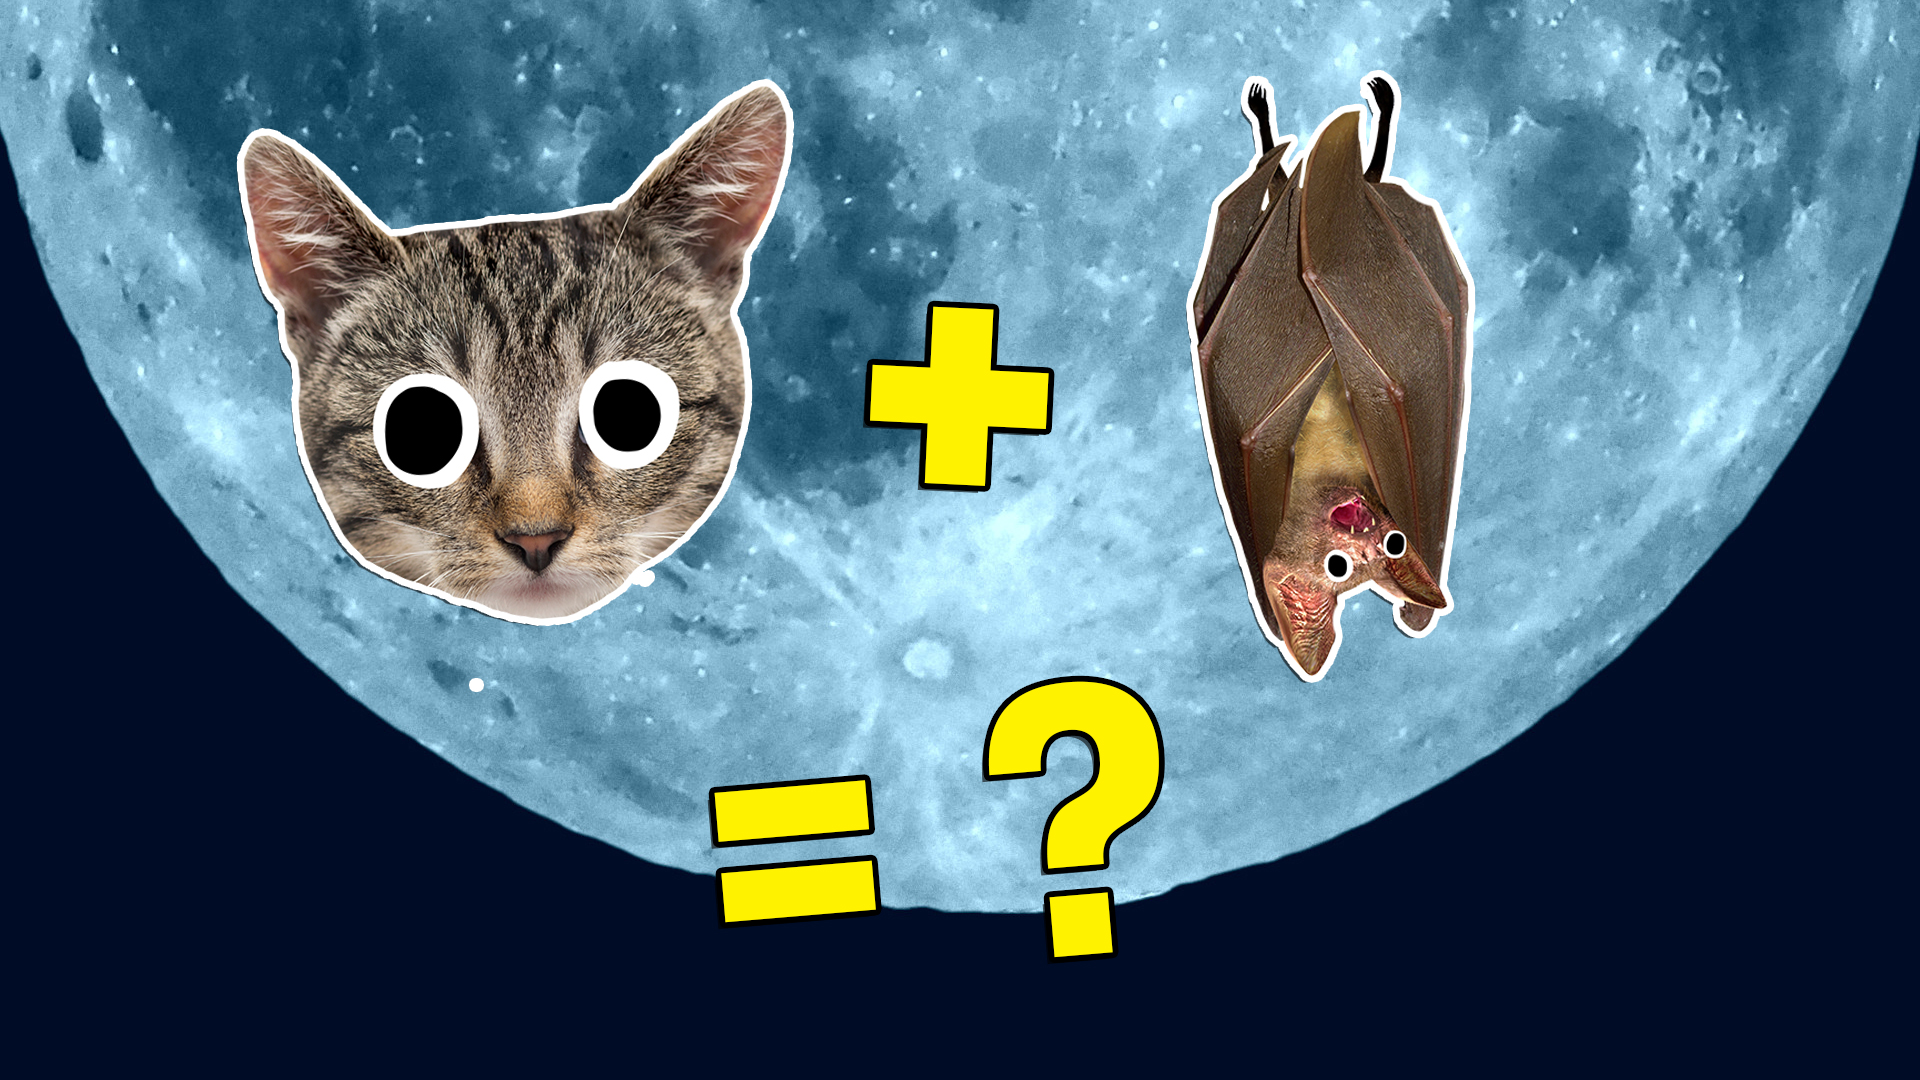 Cat + bat = what?